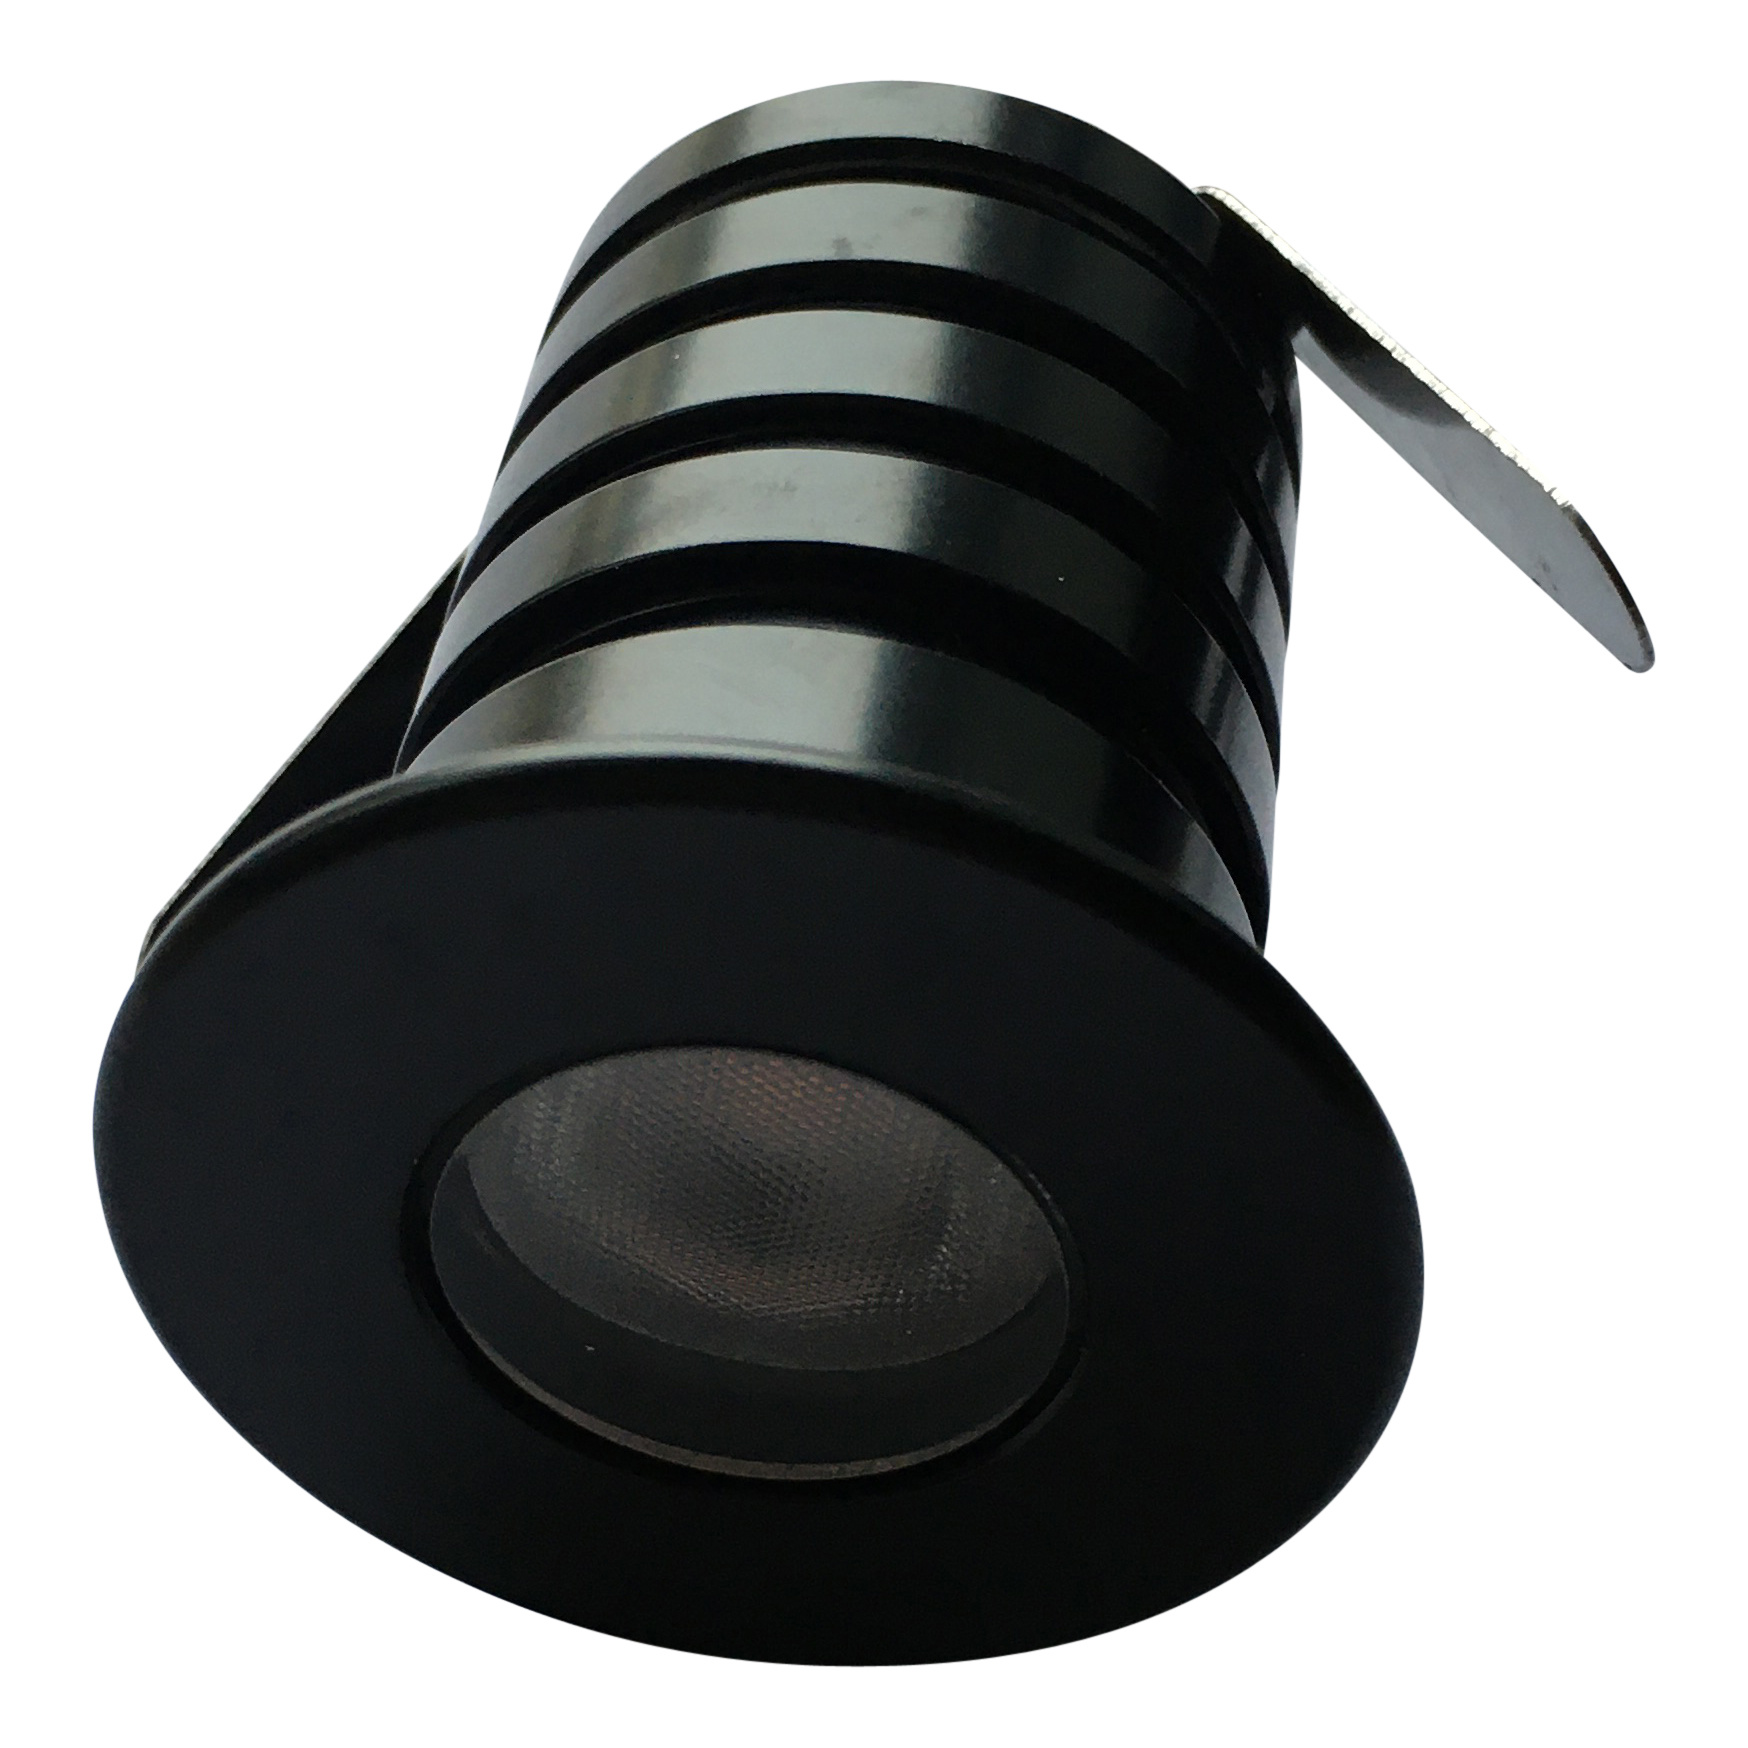 Spot LED encastrable diamètre 40mm noir ou blanc 3W